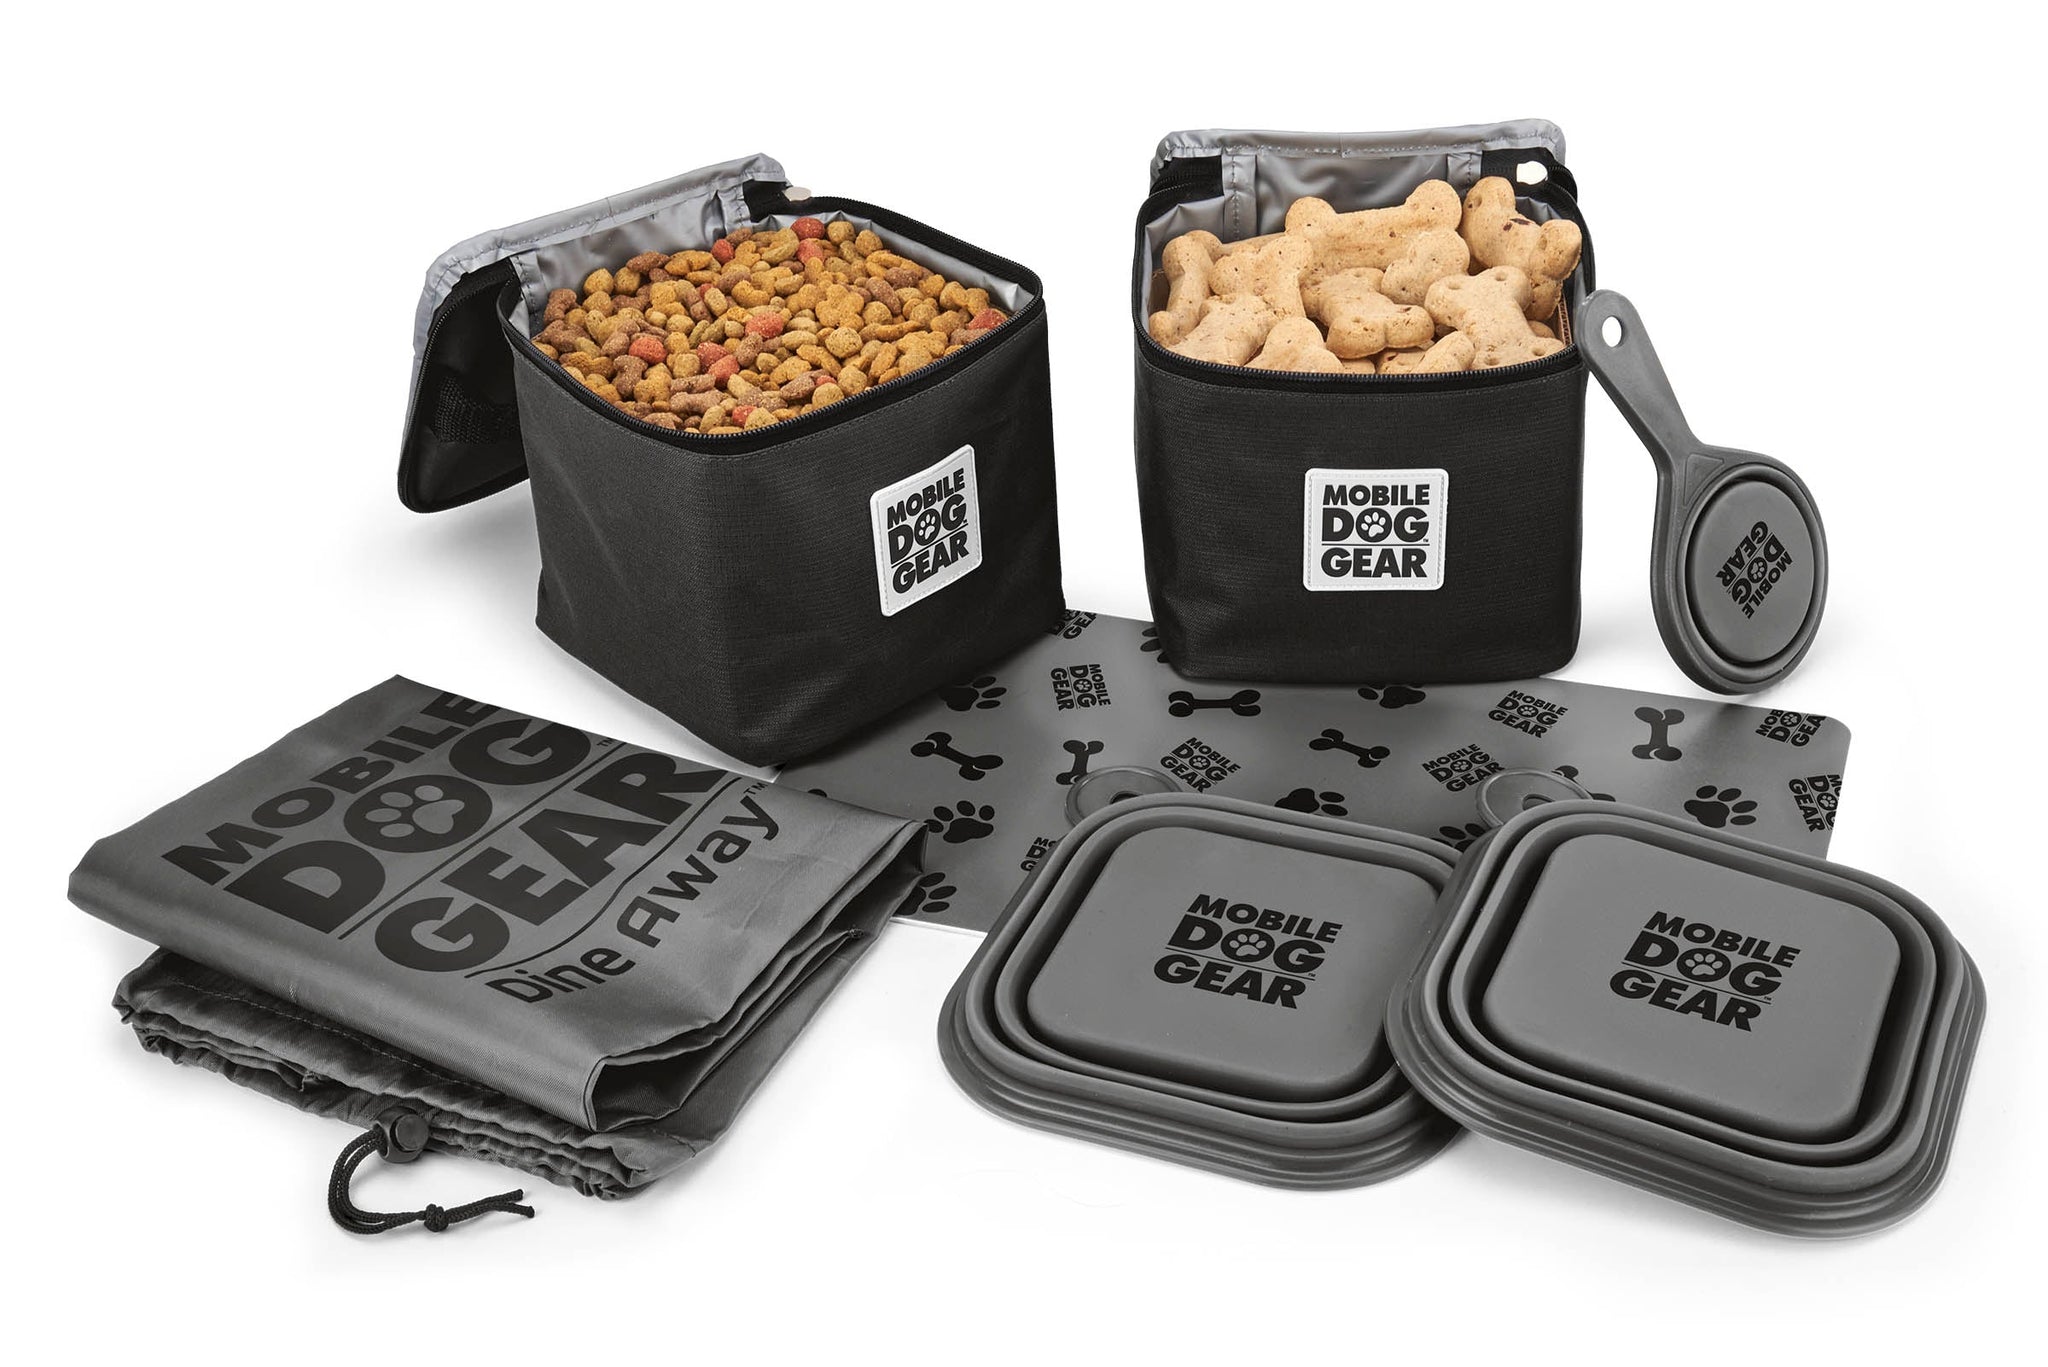 Cette boîte à lunch très fonctionnelle pour votre chien comprend : deux boîtes à nourriture de 15 tasses doublées contenants, deux boîtes à nourriture de 5 tasses en silicone pliables bols à chiens, une pelle à nourriture en silicone pliable, un napperon antidérapant et un sac à cordon qui contient l'ensemble. Le produit est présenté en noir et les accessoires sont en gris avec un motif de patte noir.L'image du produit montre les articles de la boîte à lunch à plat, tels qu'ils sortent du sac. 